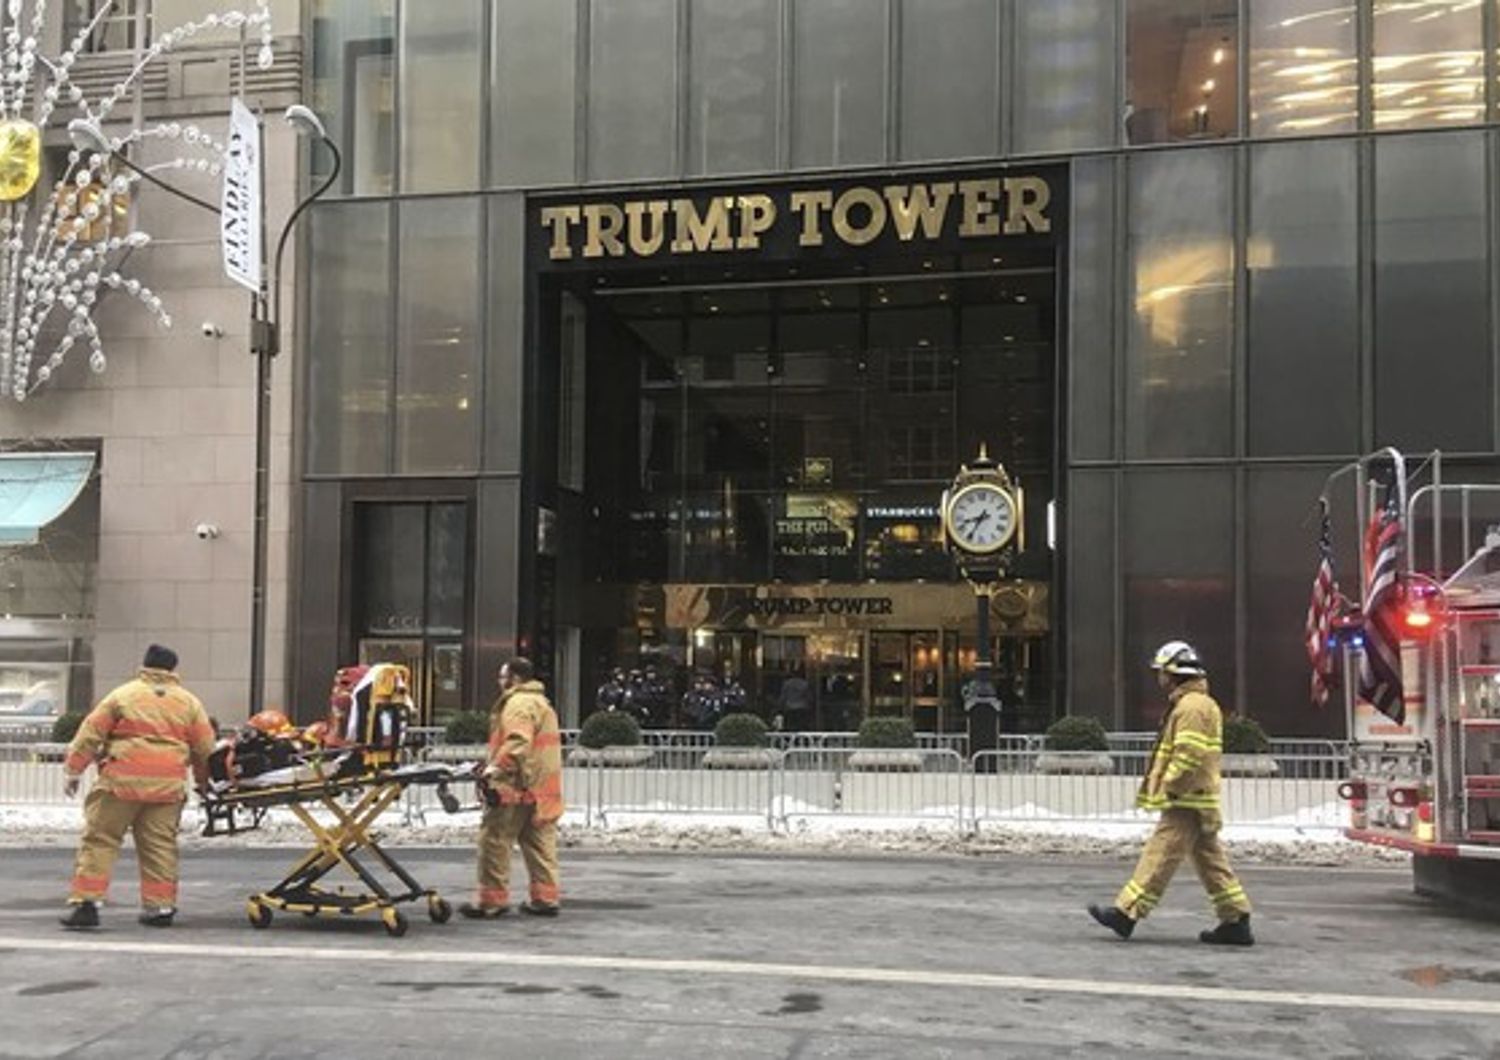 Incendio alla Tower Trump